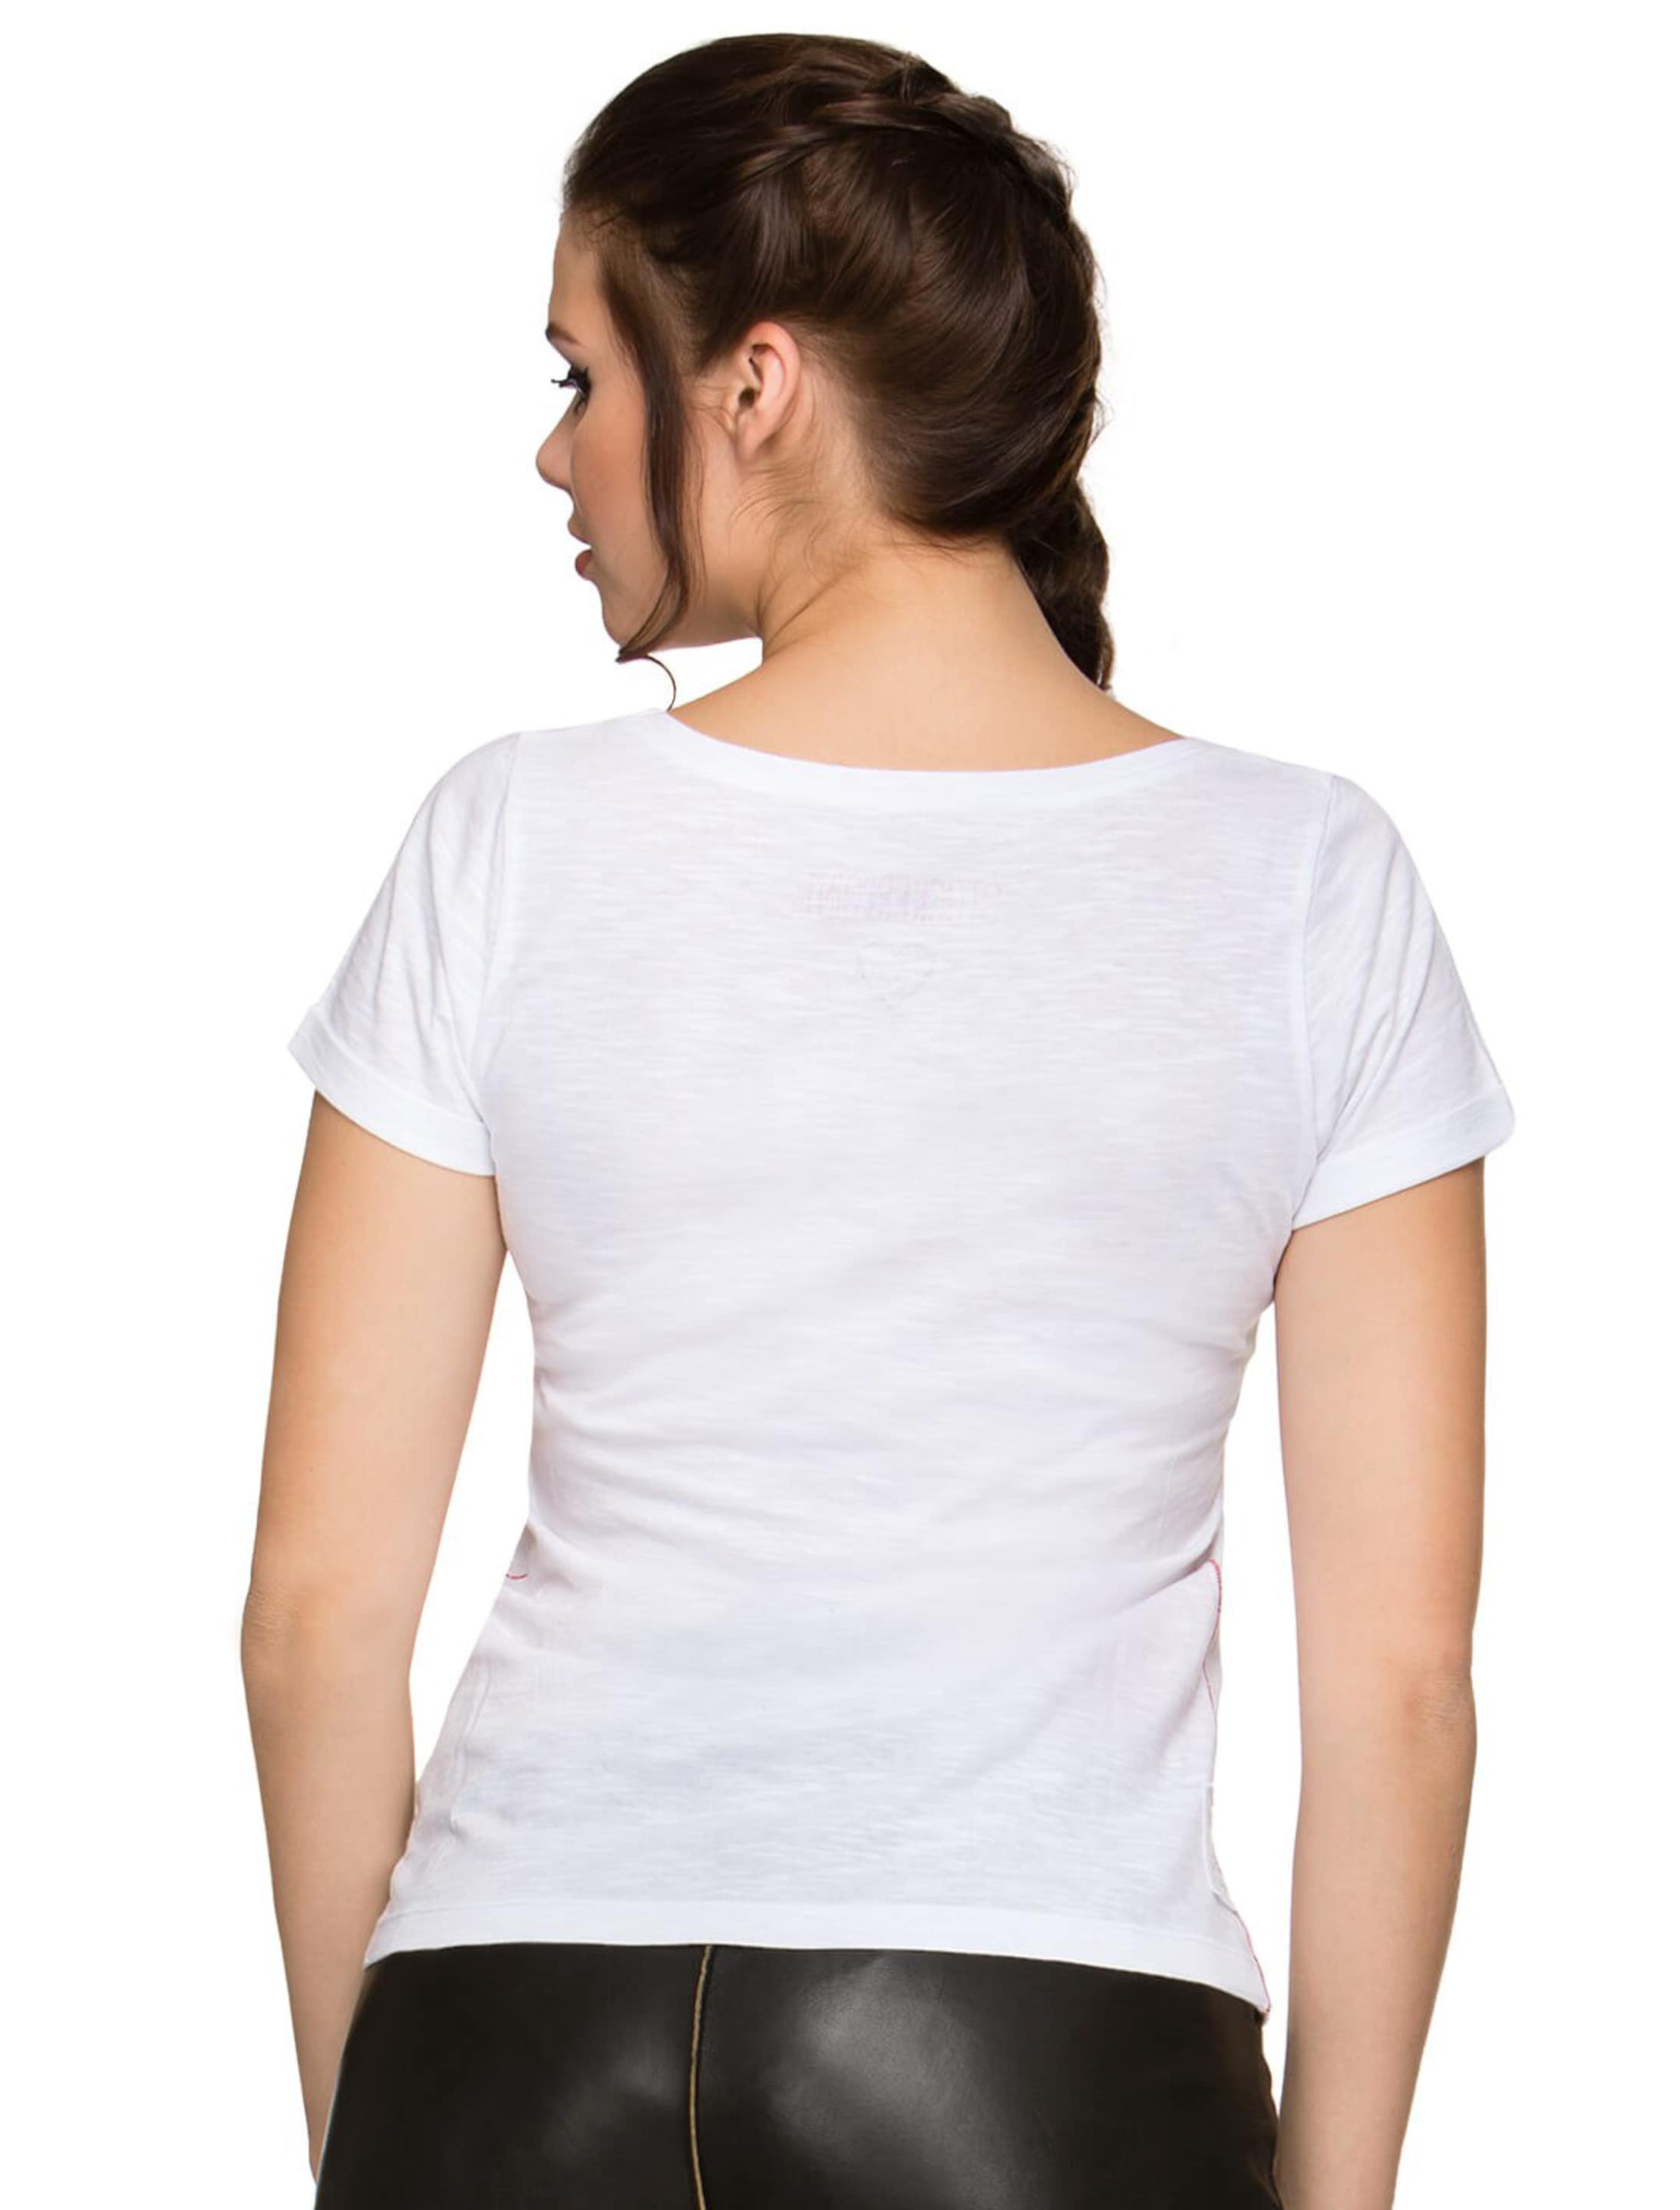 Trachten T-Shirt Gracy Damen weiß XL